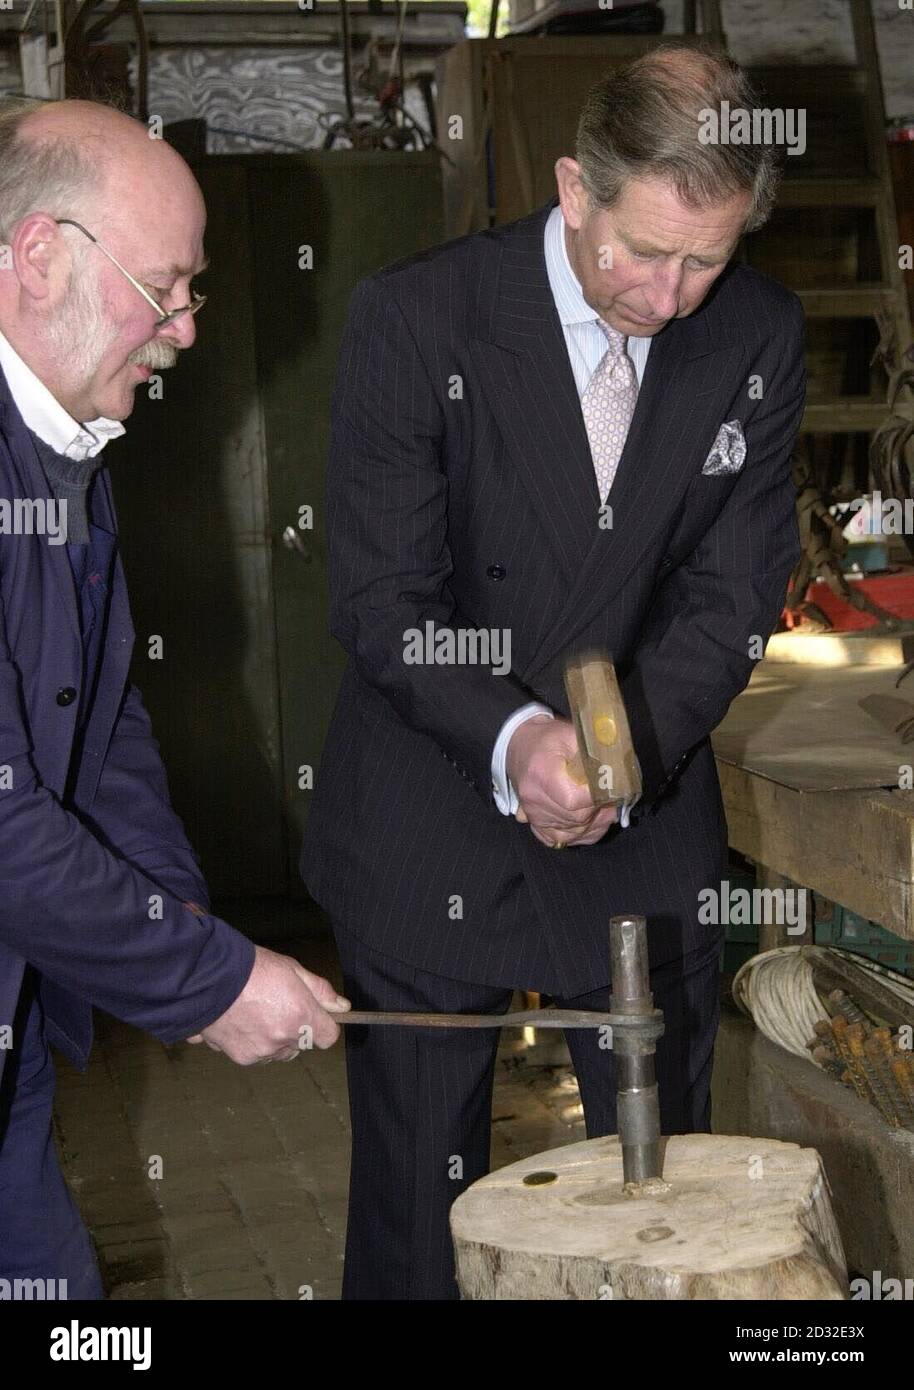 Der Prinz von Wales hilft, eine Münze zu schlagen, die an seinen Besuch erinnert, mit dem Schmied Rod Ledsham in der Schmiede während einer Tour durch Surrey Docks City Farm, South East London. Stockfoto